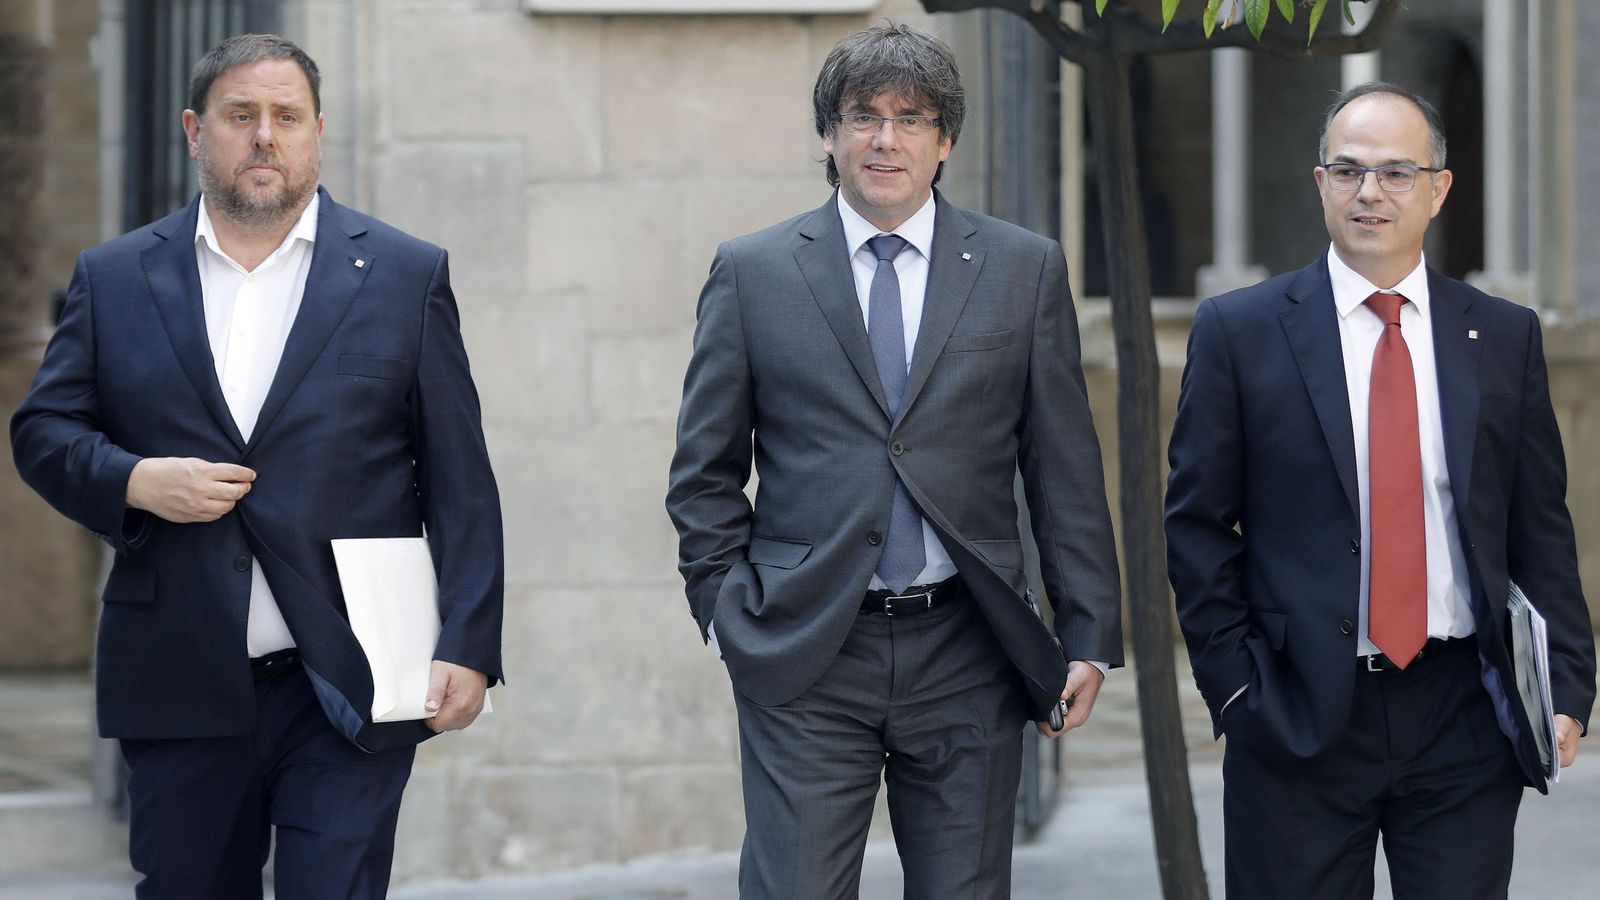 Foto: El presidente de la Generalitat, Carles Puigdemont (c), junto al vicepresidente del Govern, Oriol Junqueras (i), y el portavoz del Govern, Jordi Turull (d), a su llegada a la reunión semanal del Govern.